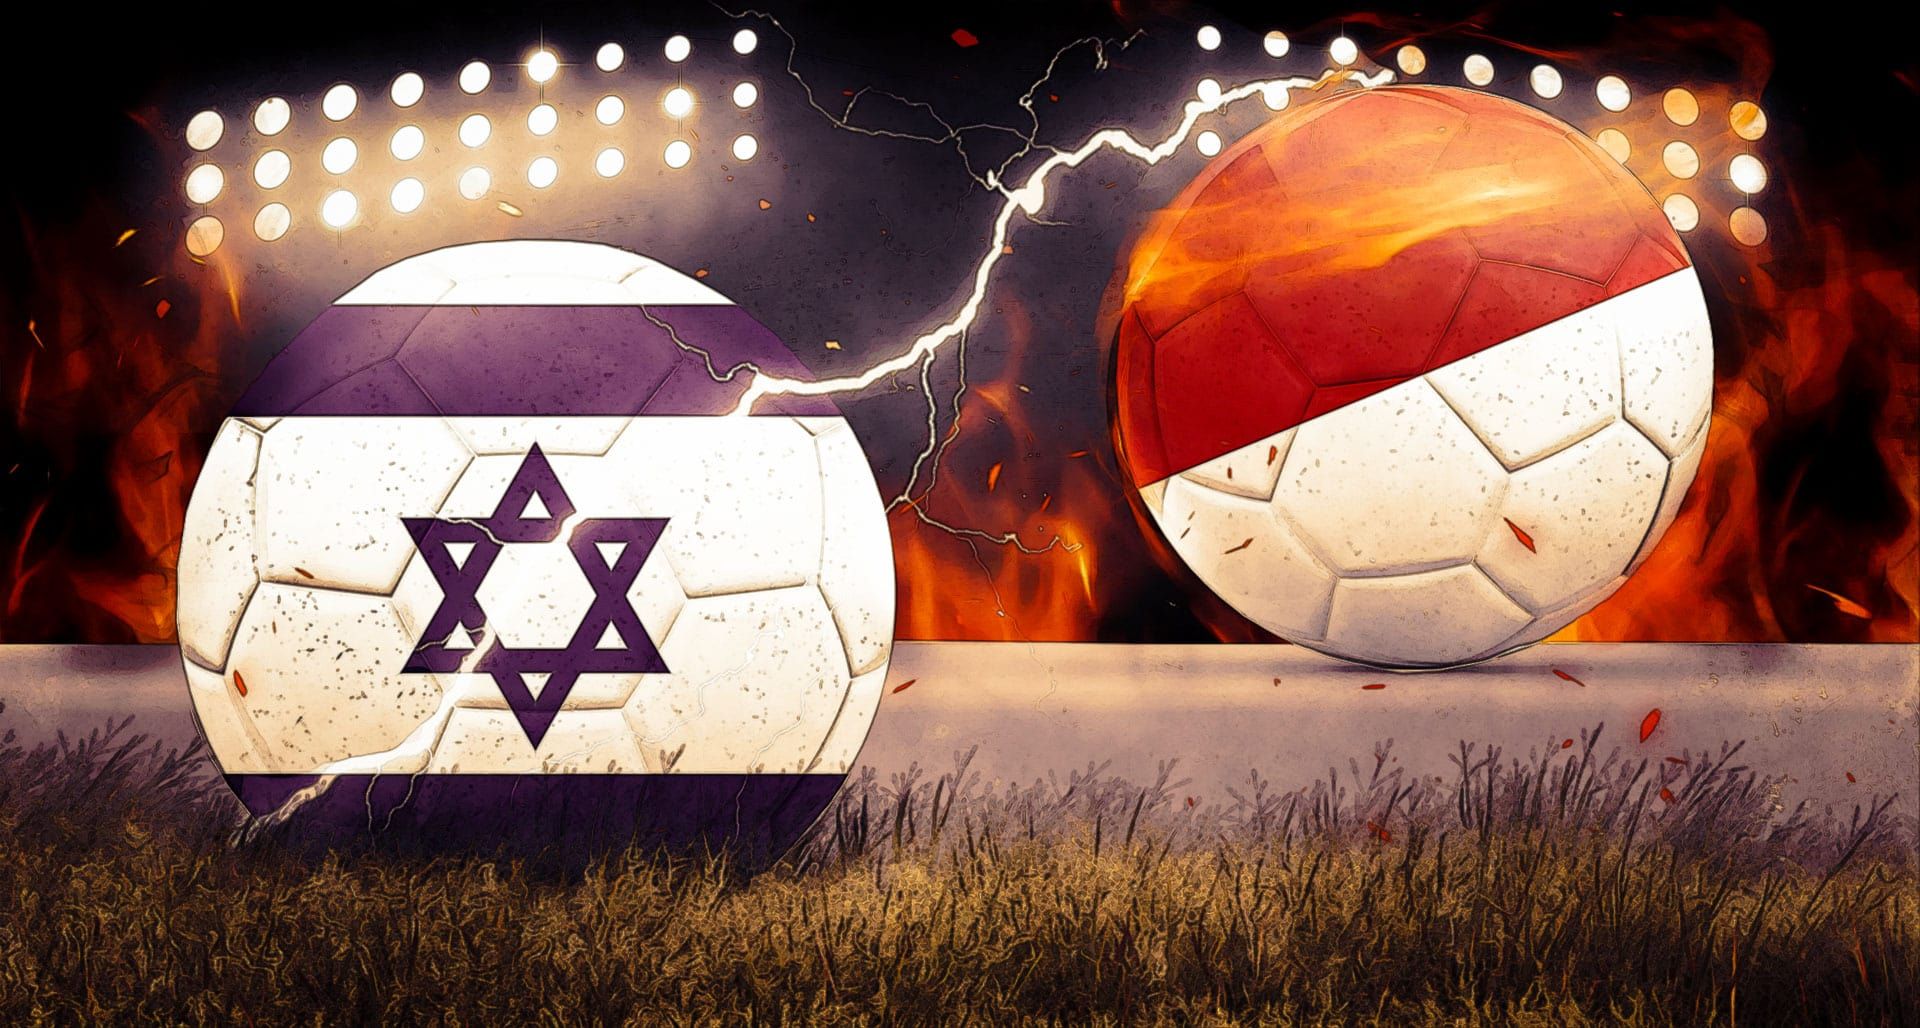 FIFA Indonesia U20 World Cup - Israel